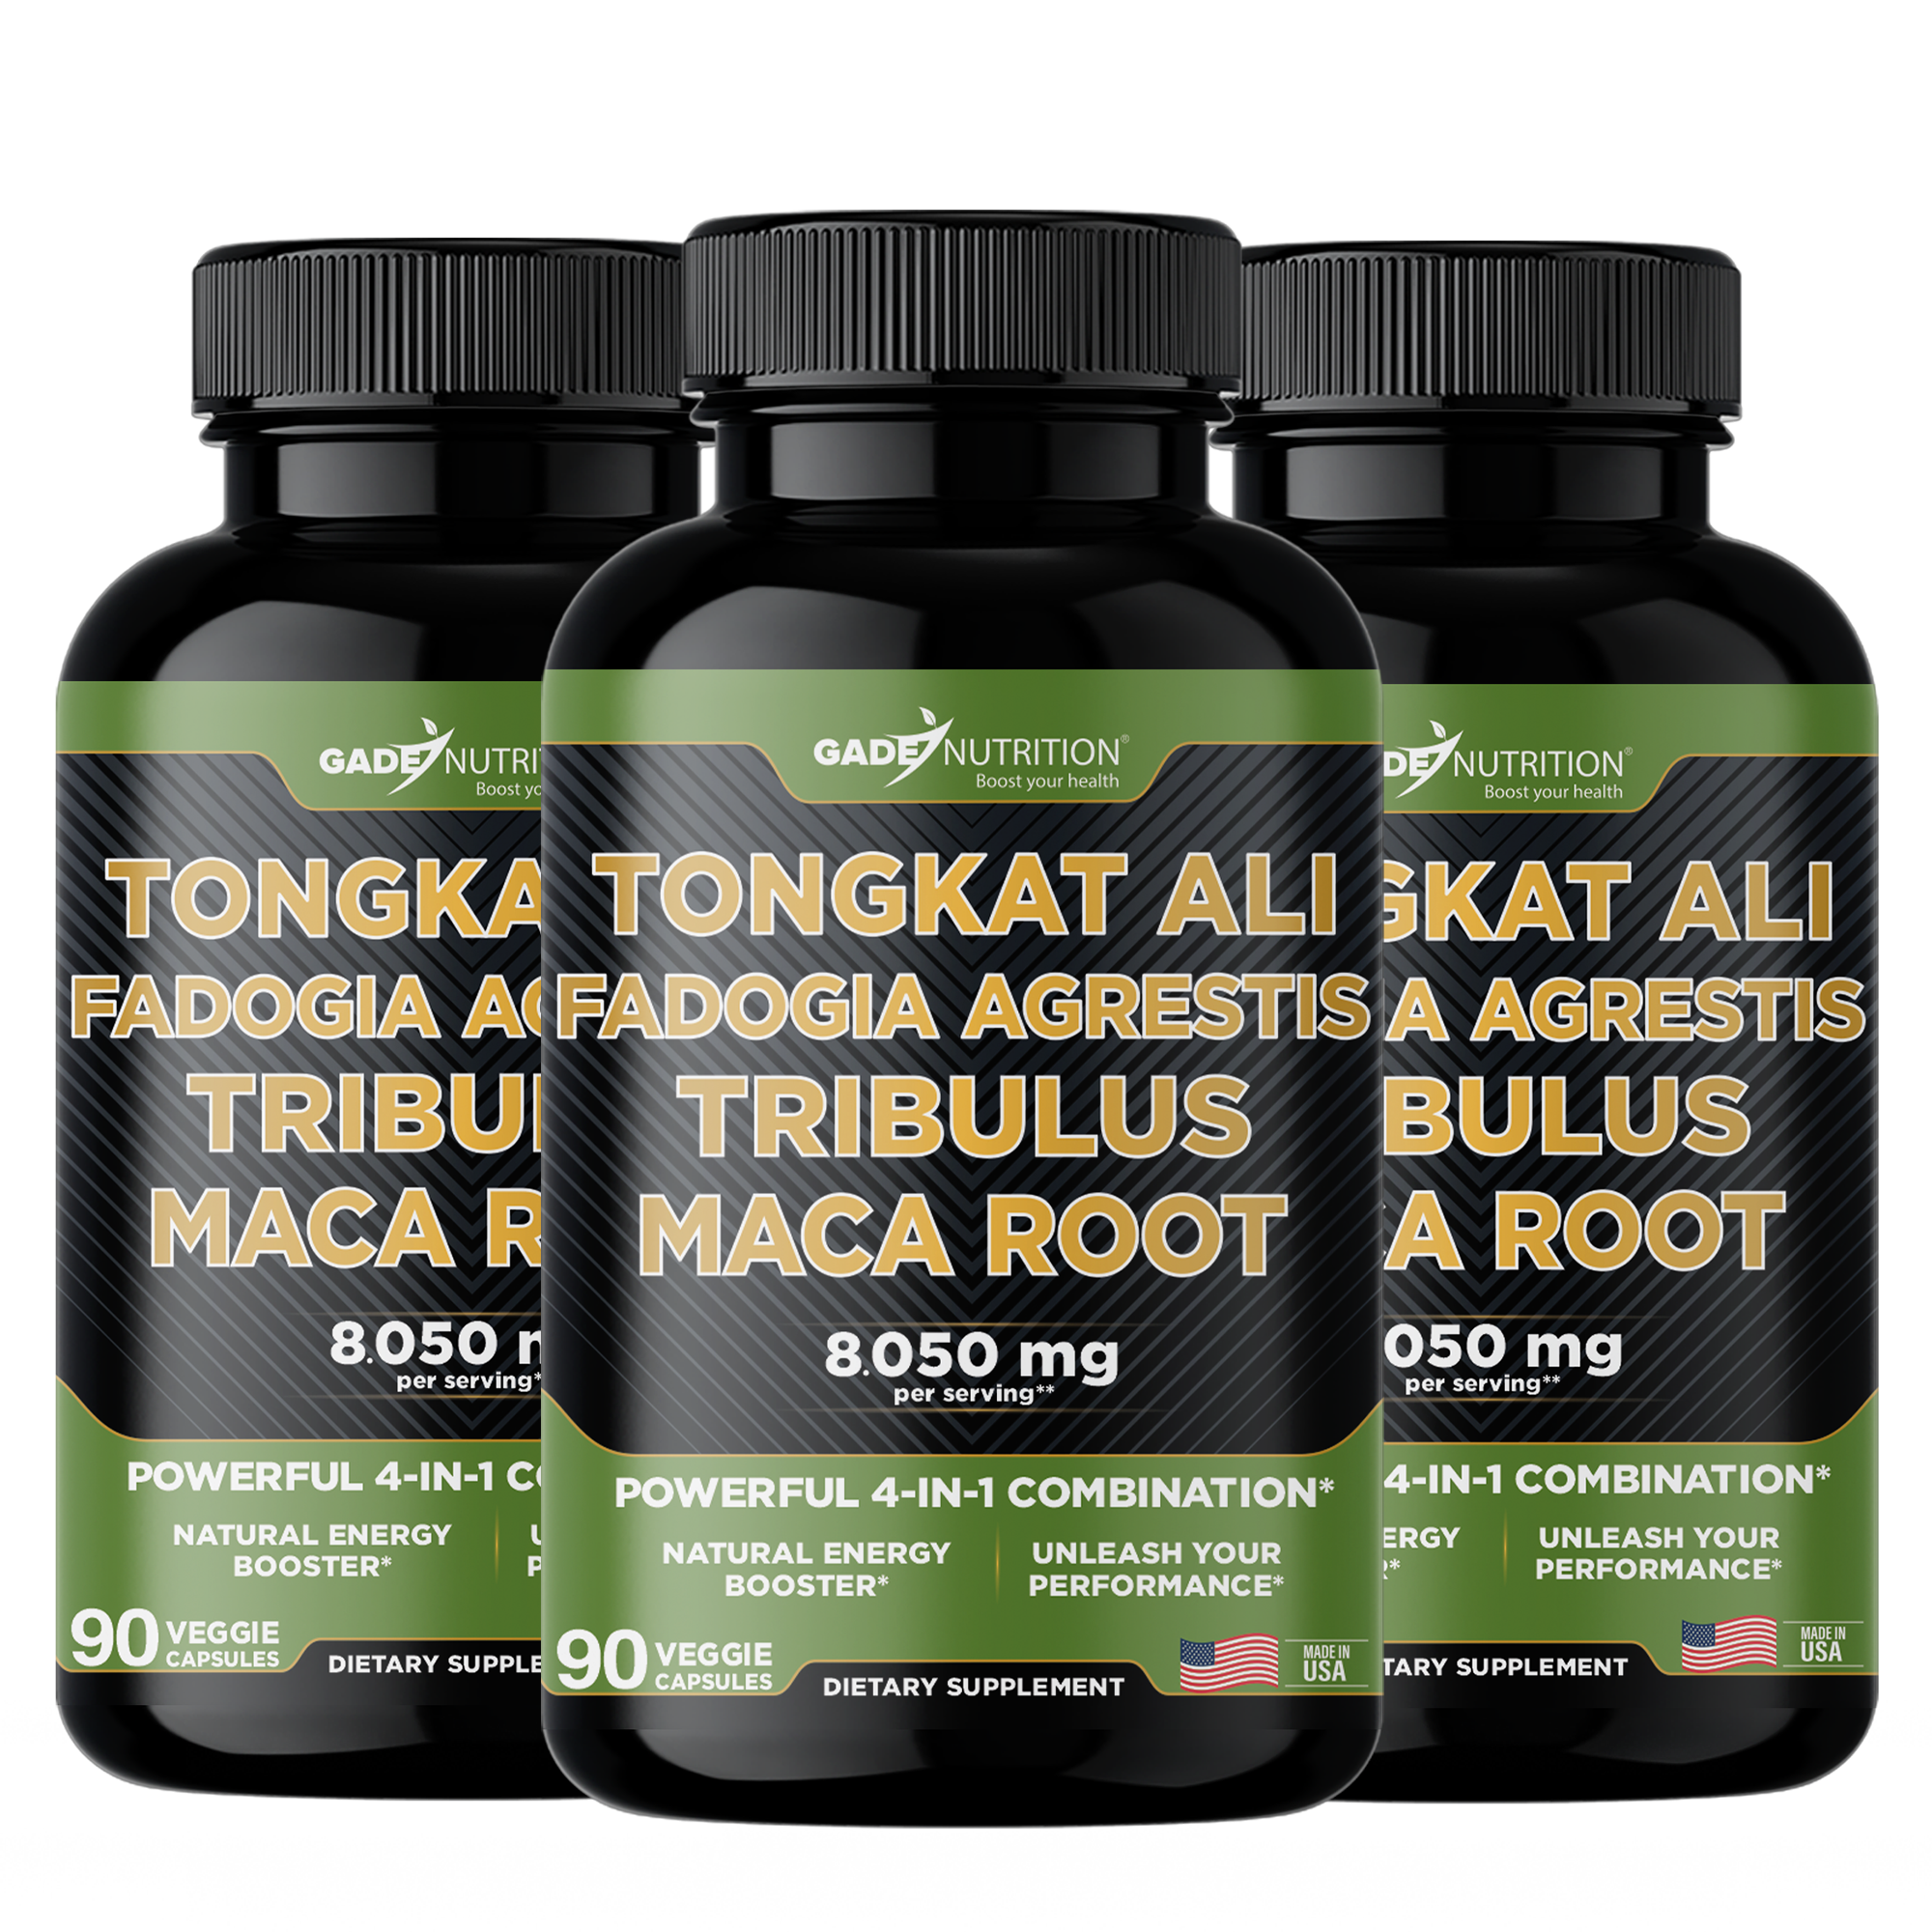 Tongkat Ali, Fadogia Agrestis, Tribulus and Maca Root